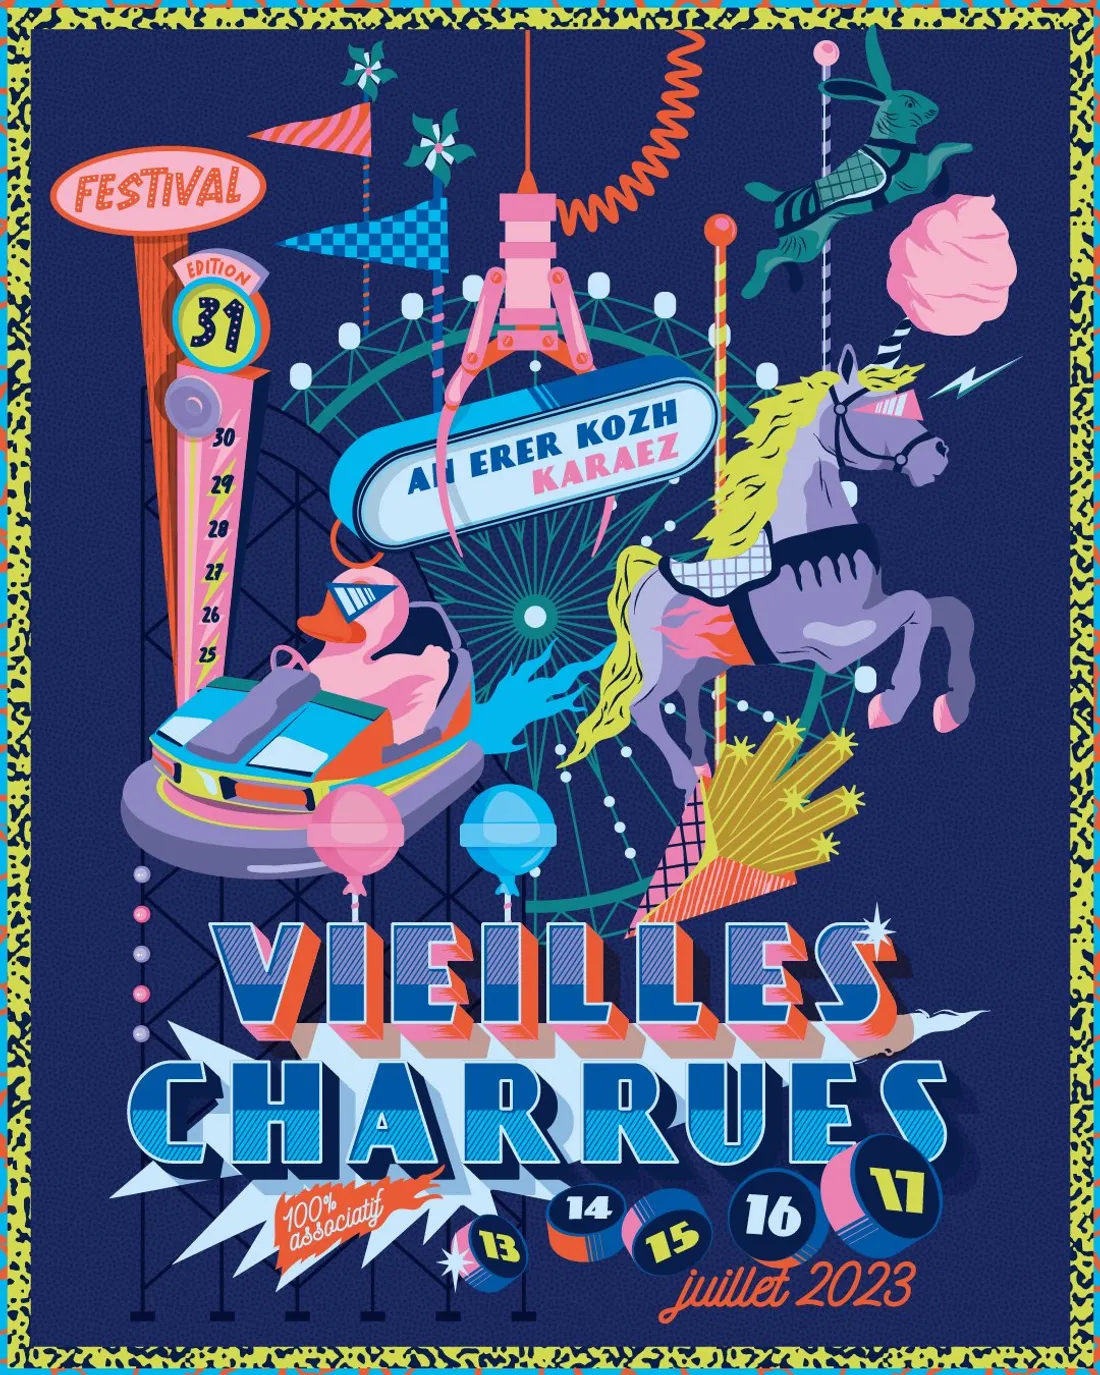 Pour sa 31ème édition, le festival des Vieilles Charrues se déroulera sur cinq jours. 